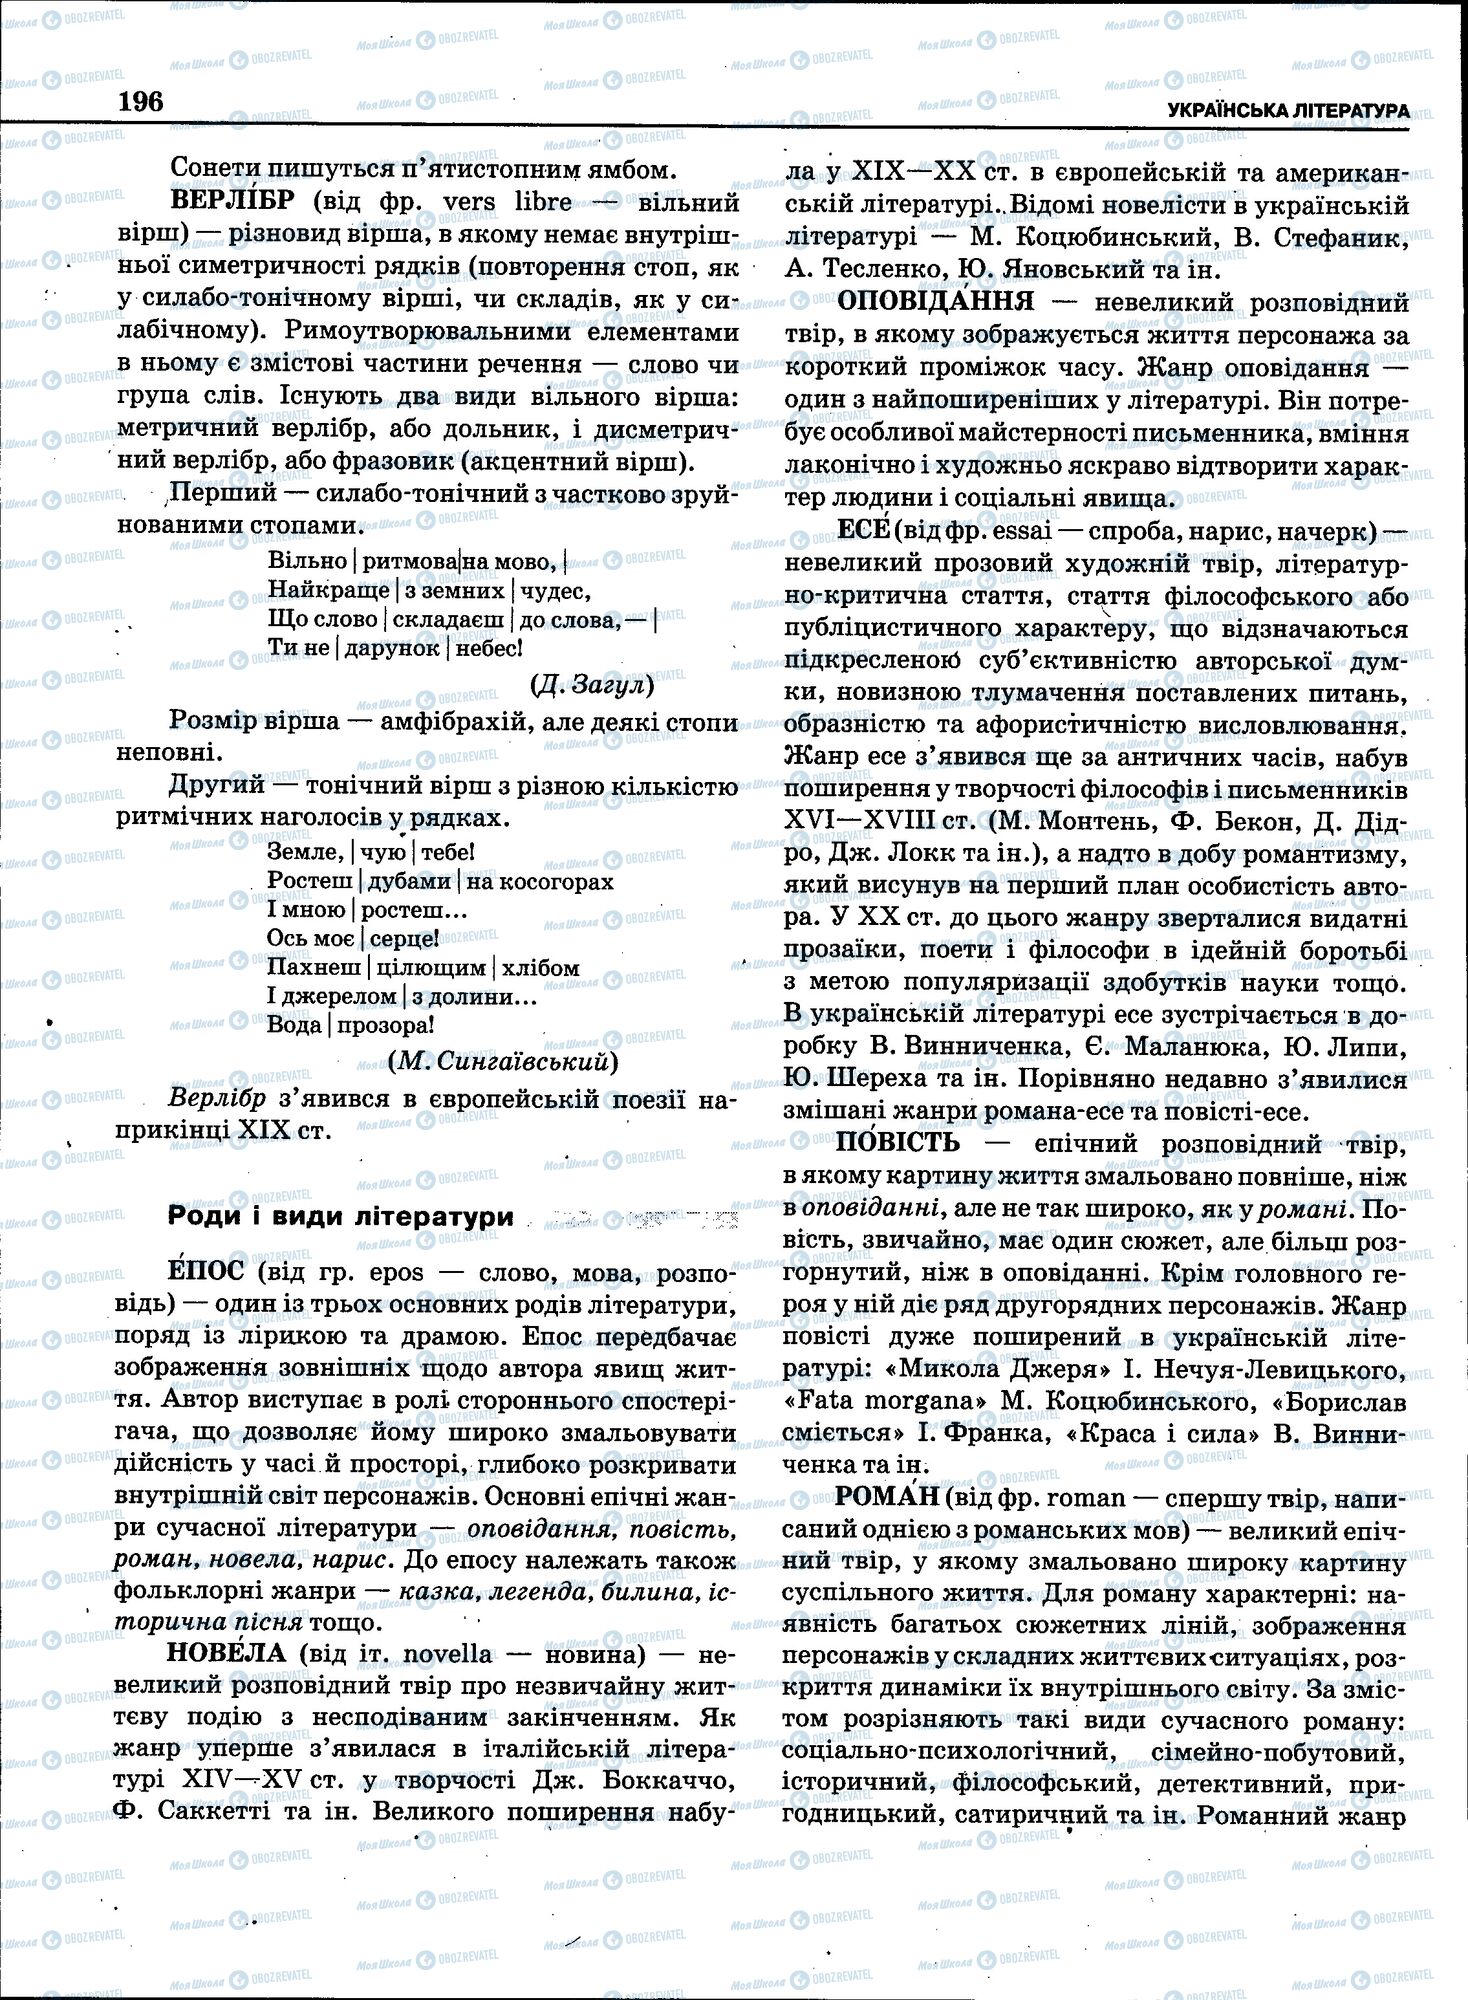 ЗНО Укр мова 11 класс страница 194